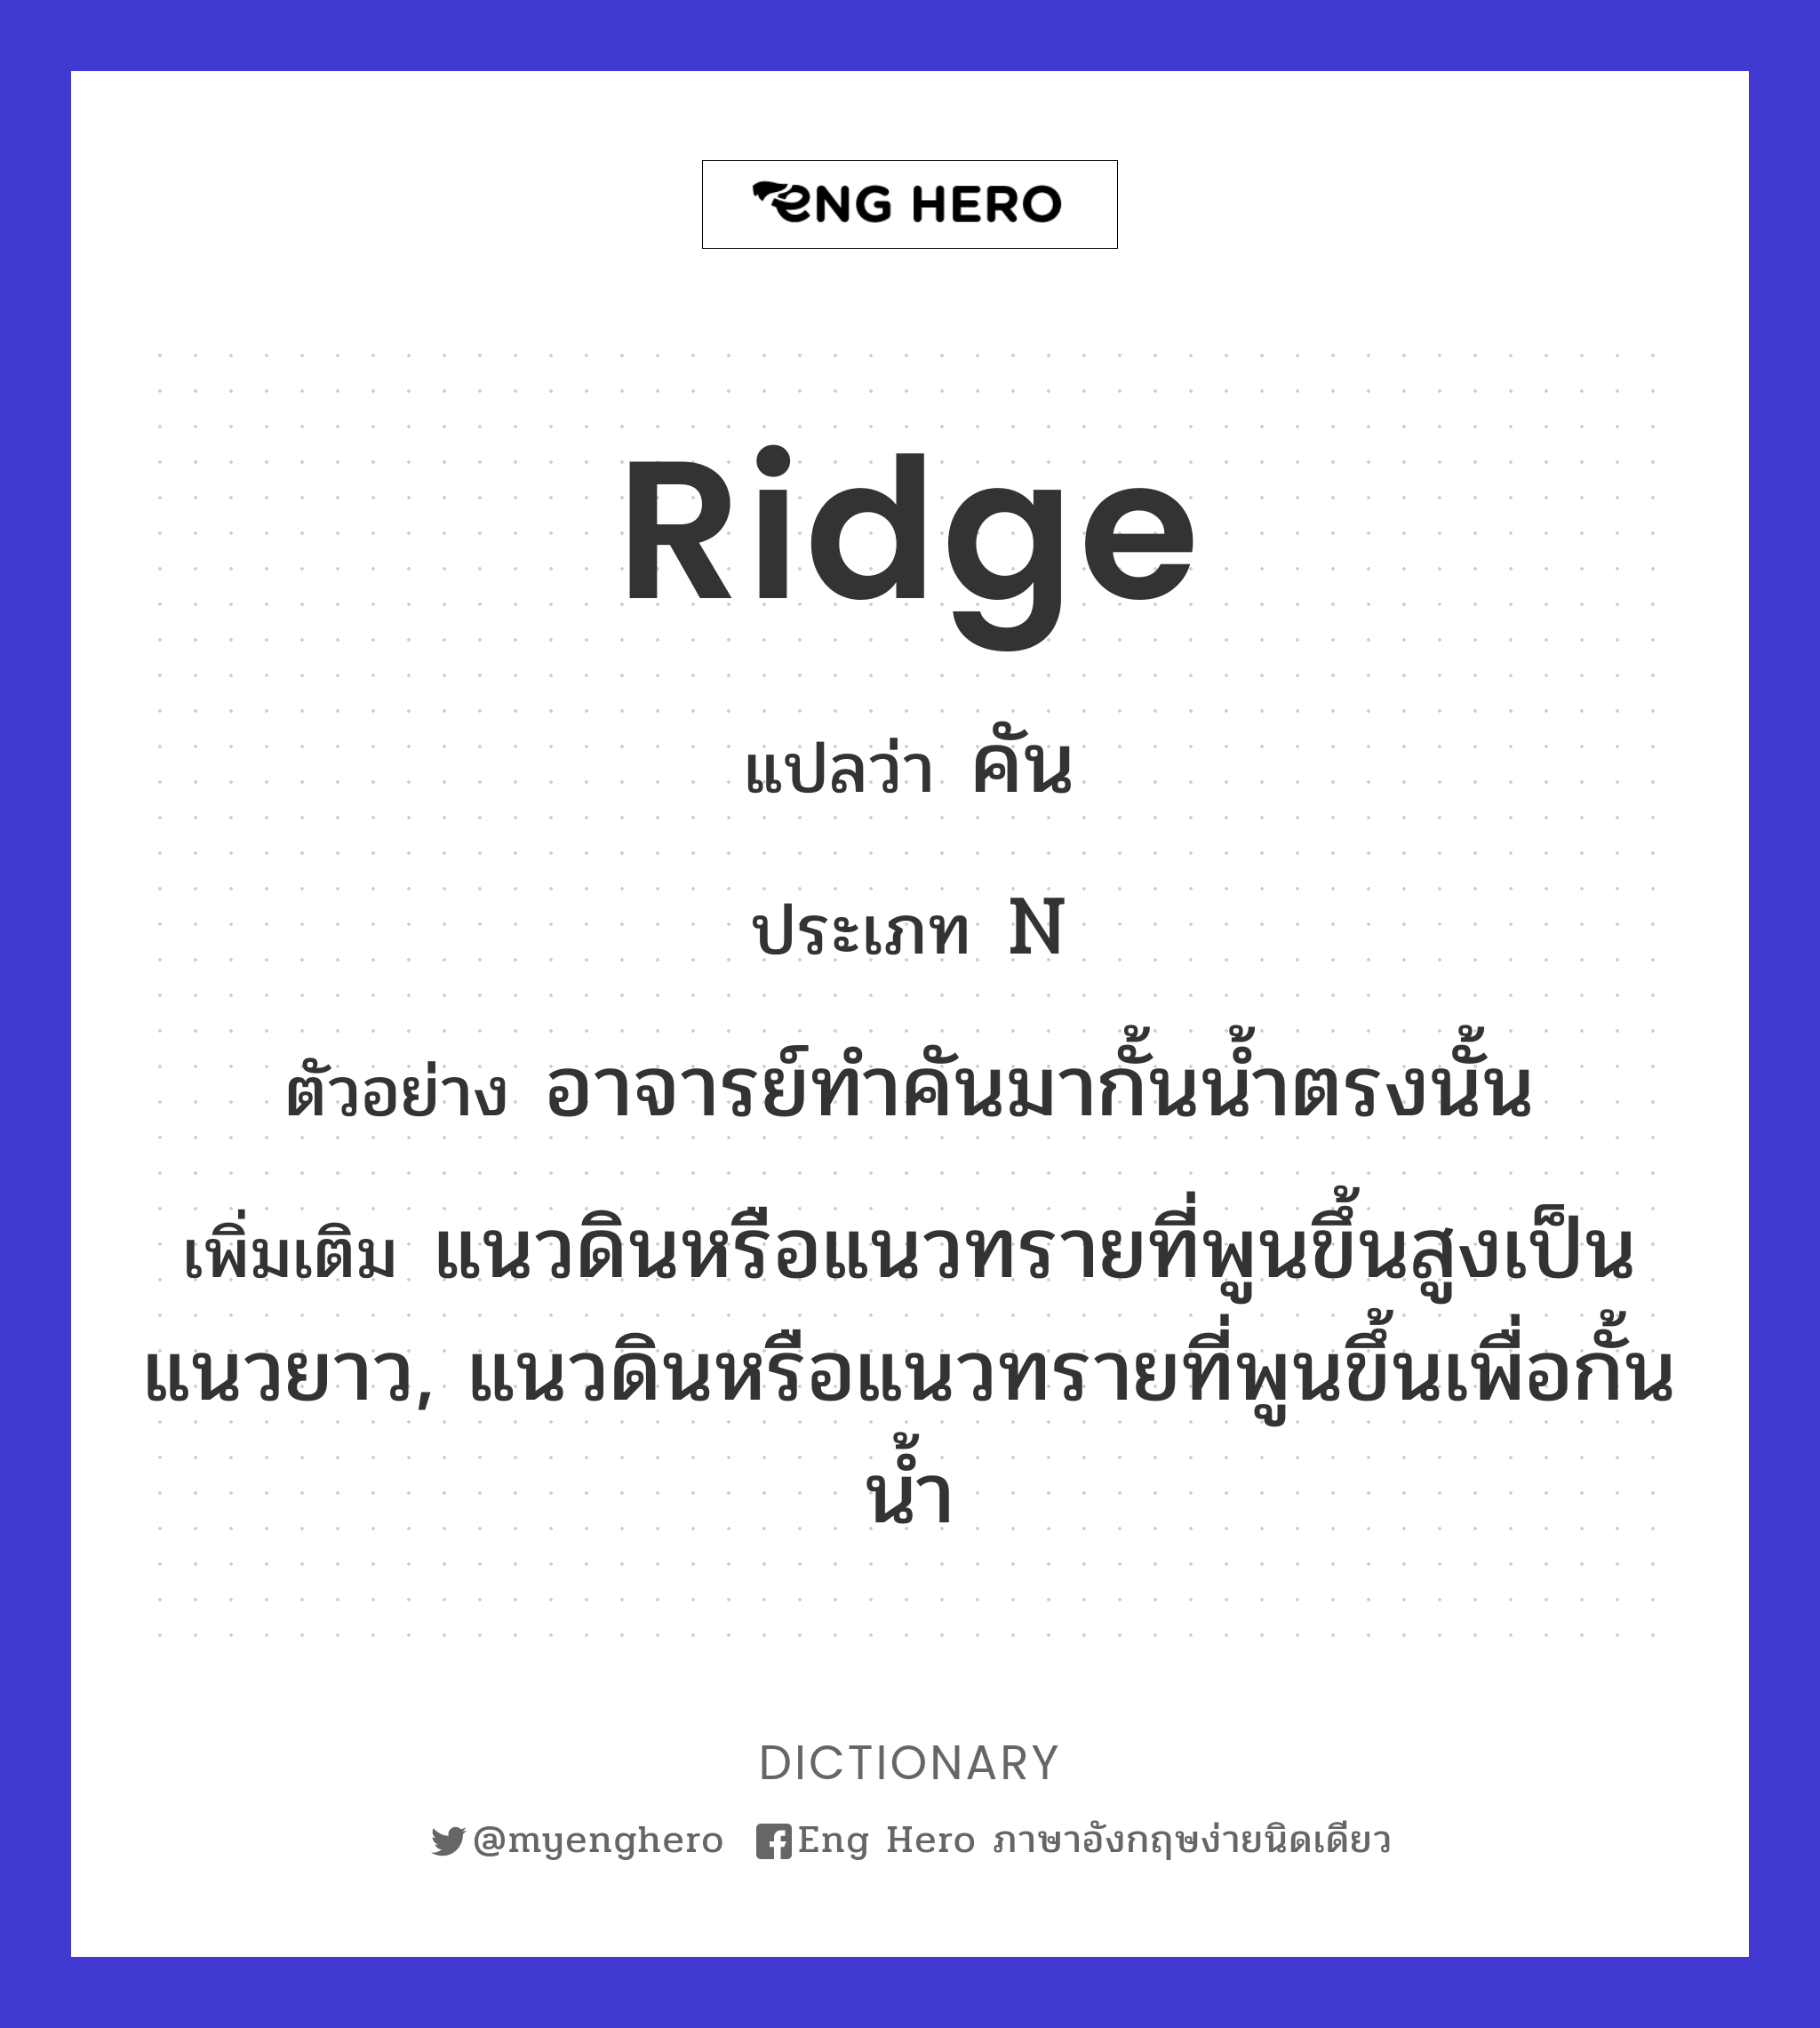 ridge